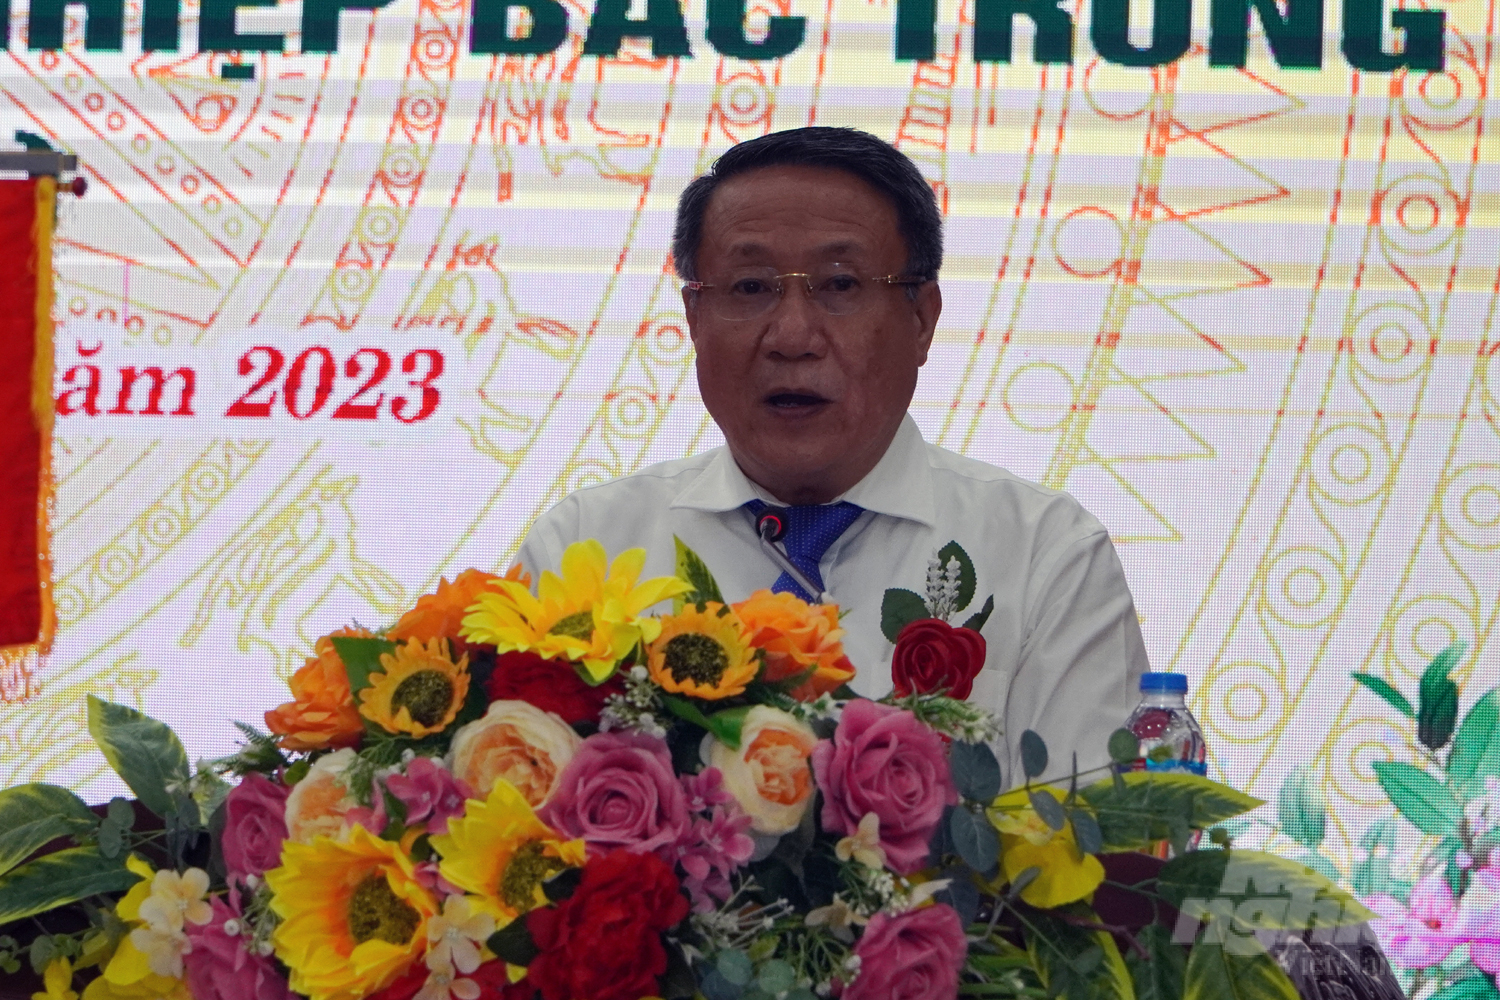 Phó Chủ tịch UBND tỉnh Quảng Trị Hà Sỹ Đồng mong muốn Trung tâm Khoa học lâm nghiệp Bắc Trung bộ tiếp tục phát triển để có nhiều đóng góp cho ngành lâm nghiệp cũng như sự phát triển kinh tế - xã hội của địa phương. Ảnh: Võ Dũng.